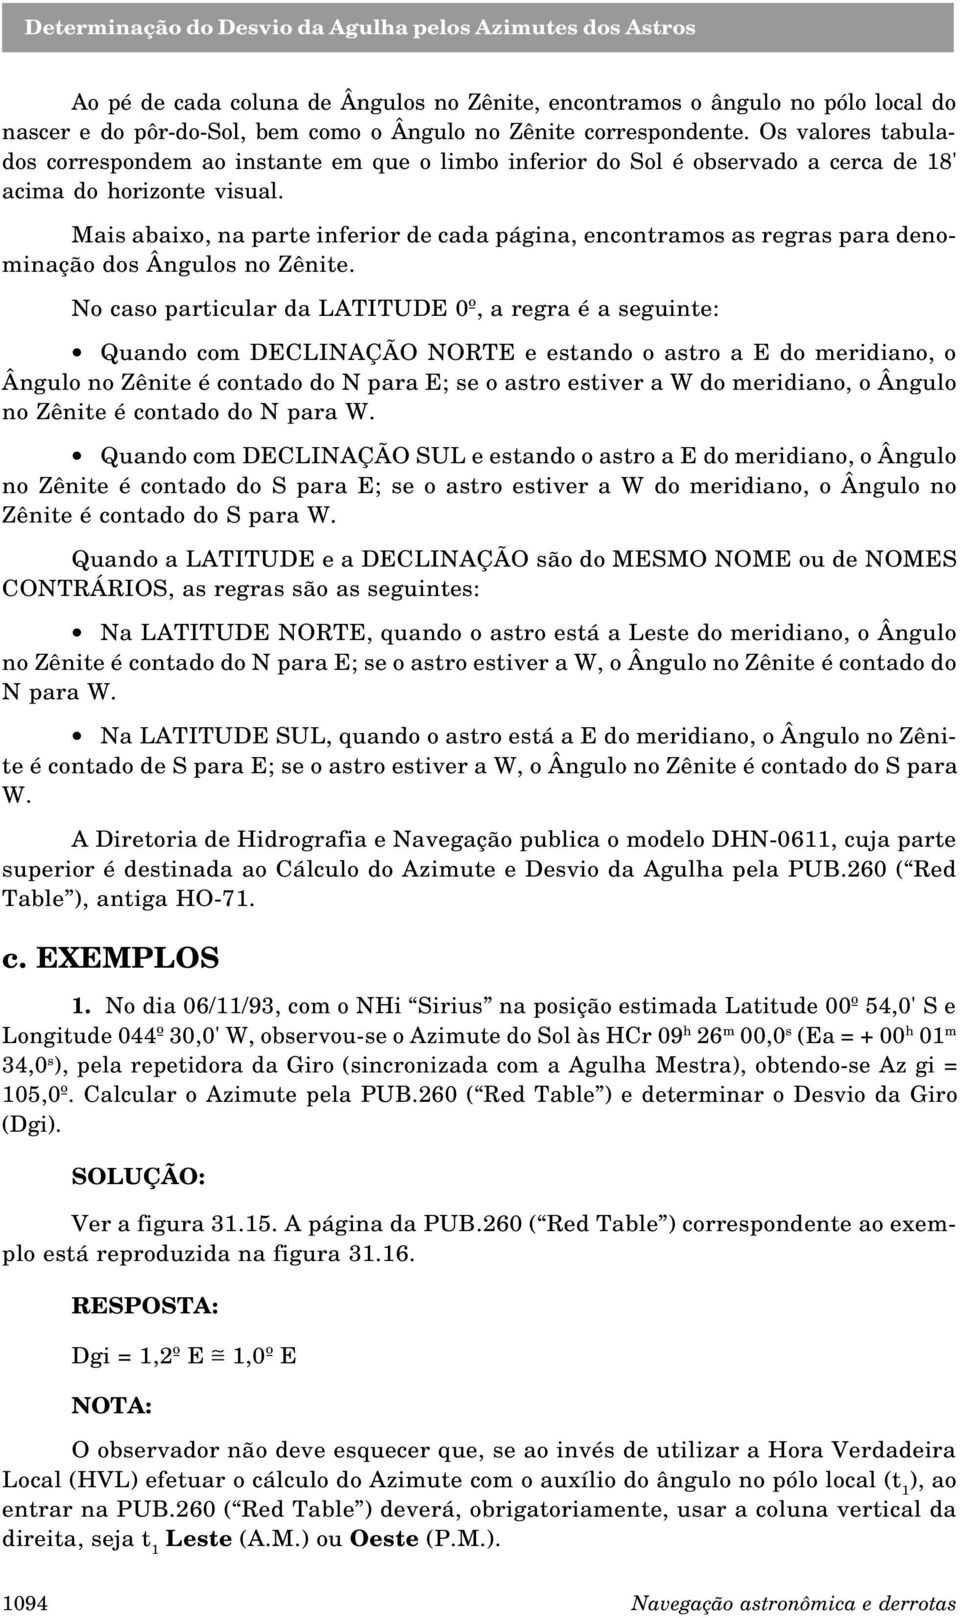 Mais abaixo, na parte inferior de cada página, encontramos as regras para denominação dos Ângulos no Zênite.